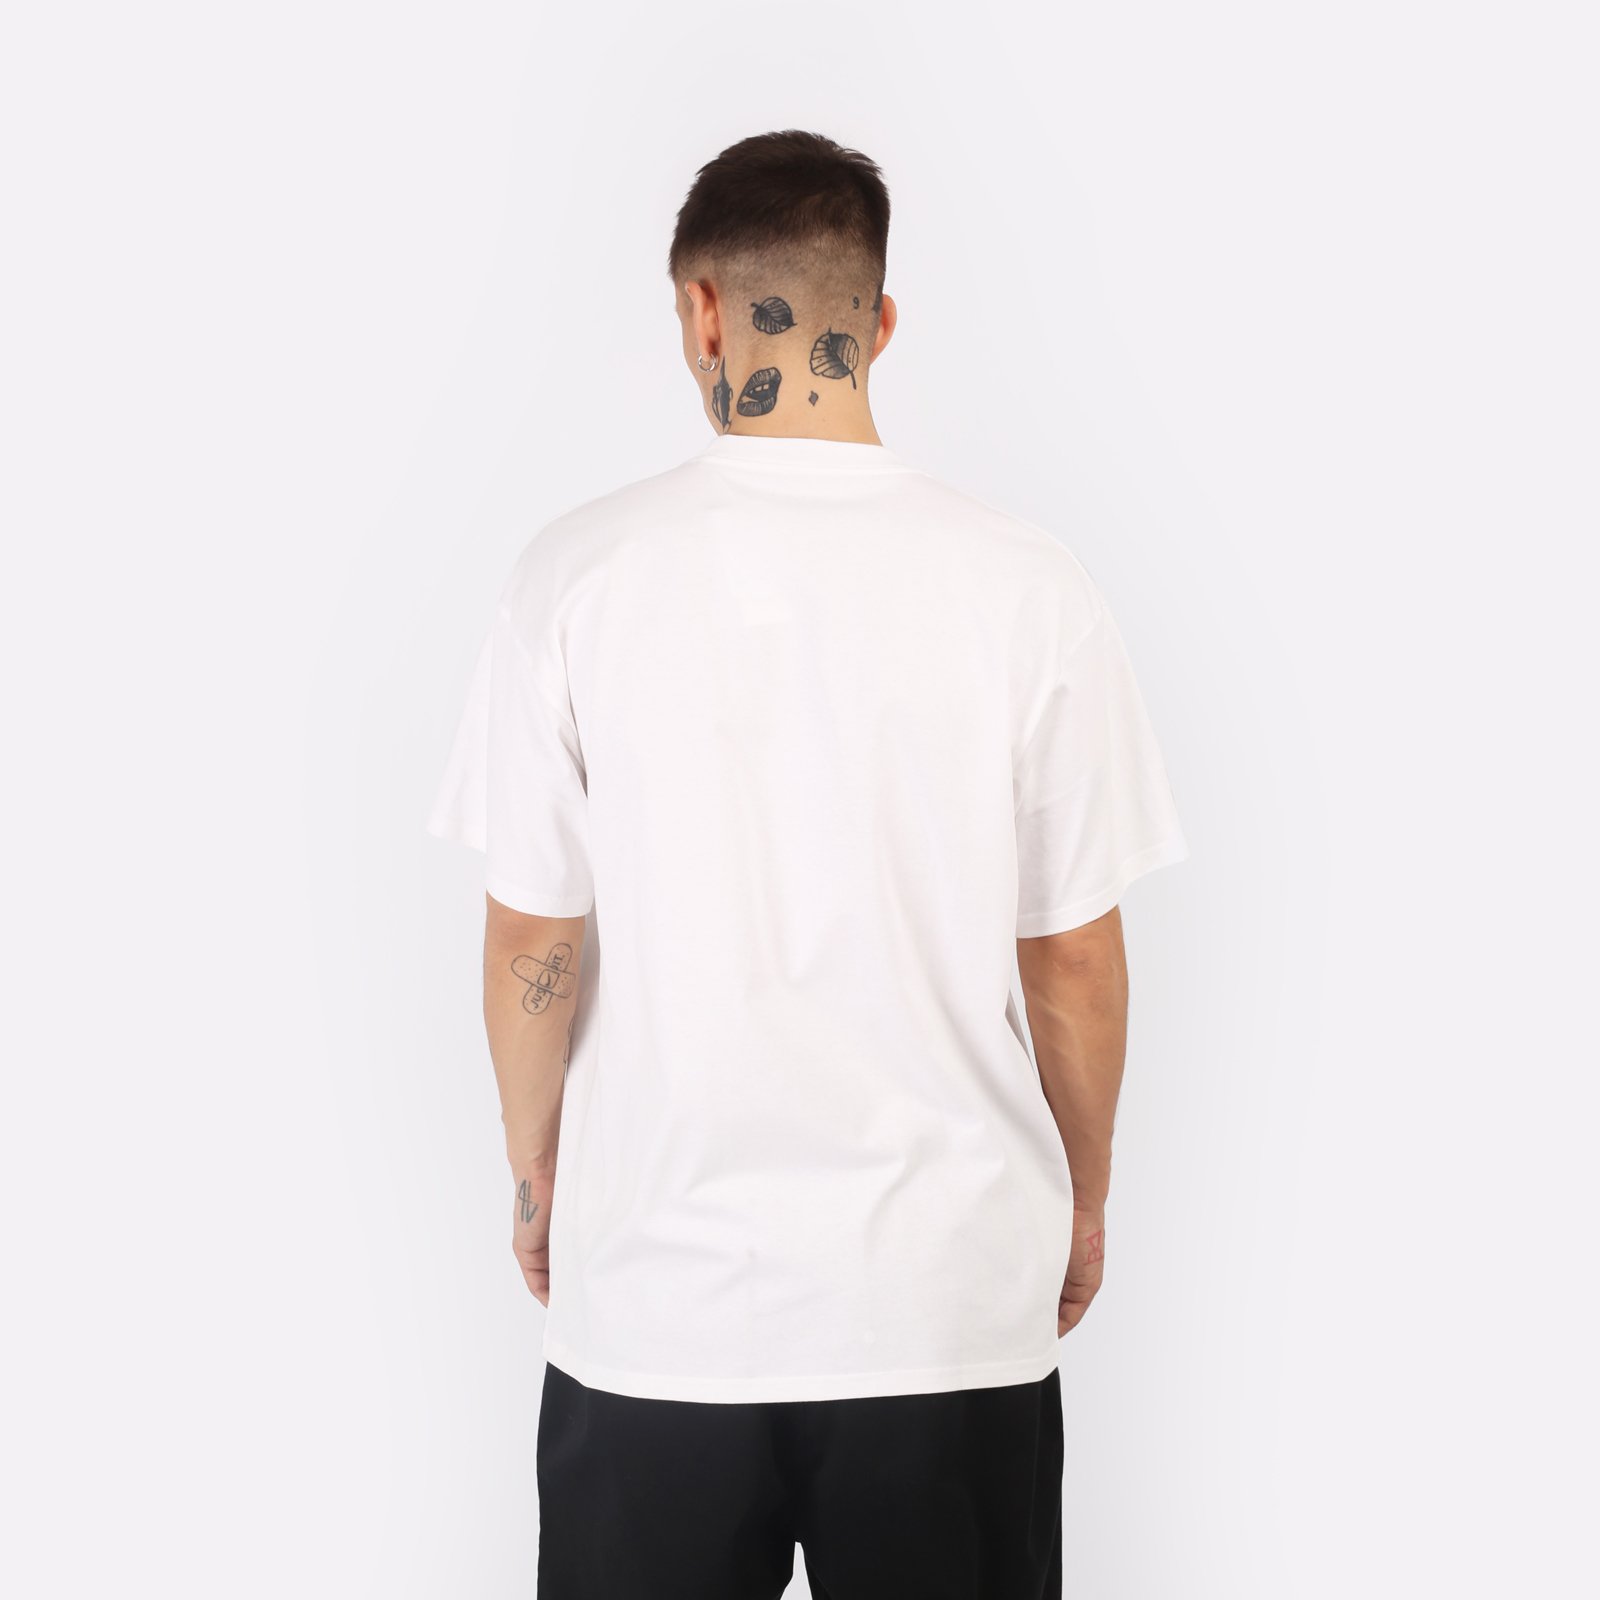 мужская белая футболка Carhartt WIP S/S University T-Shirt I028990-white/black - цена, описание, фото 2